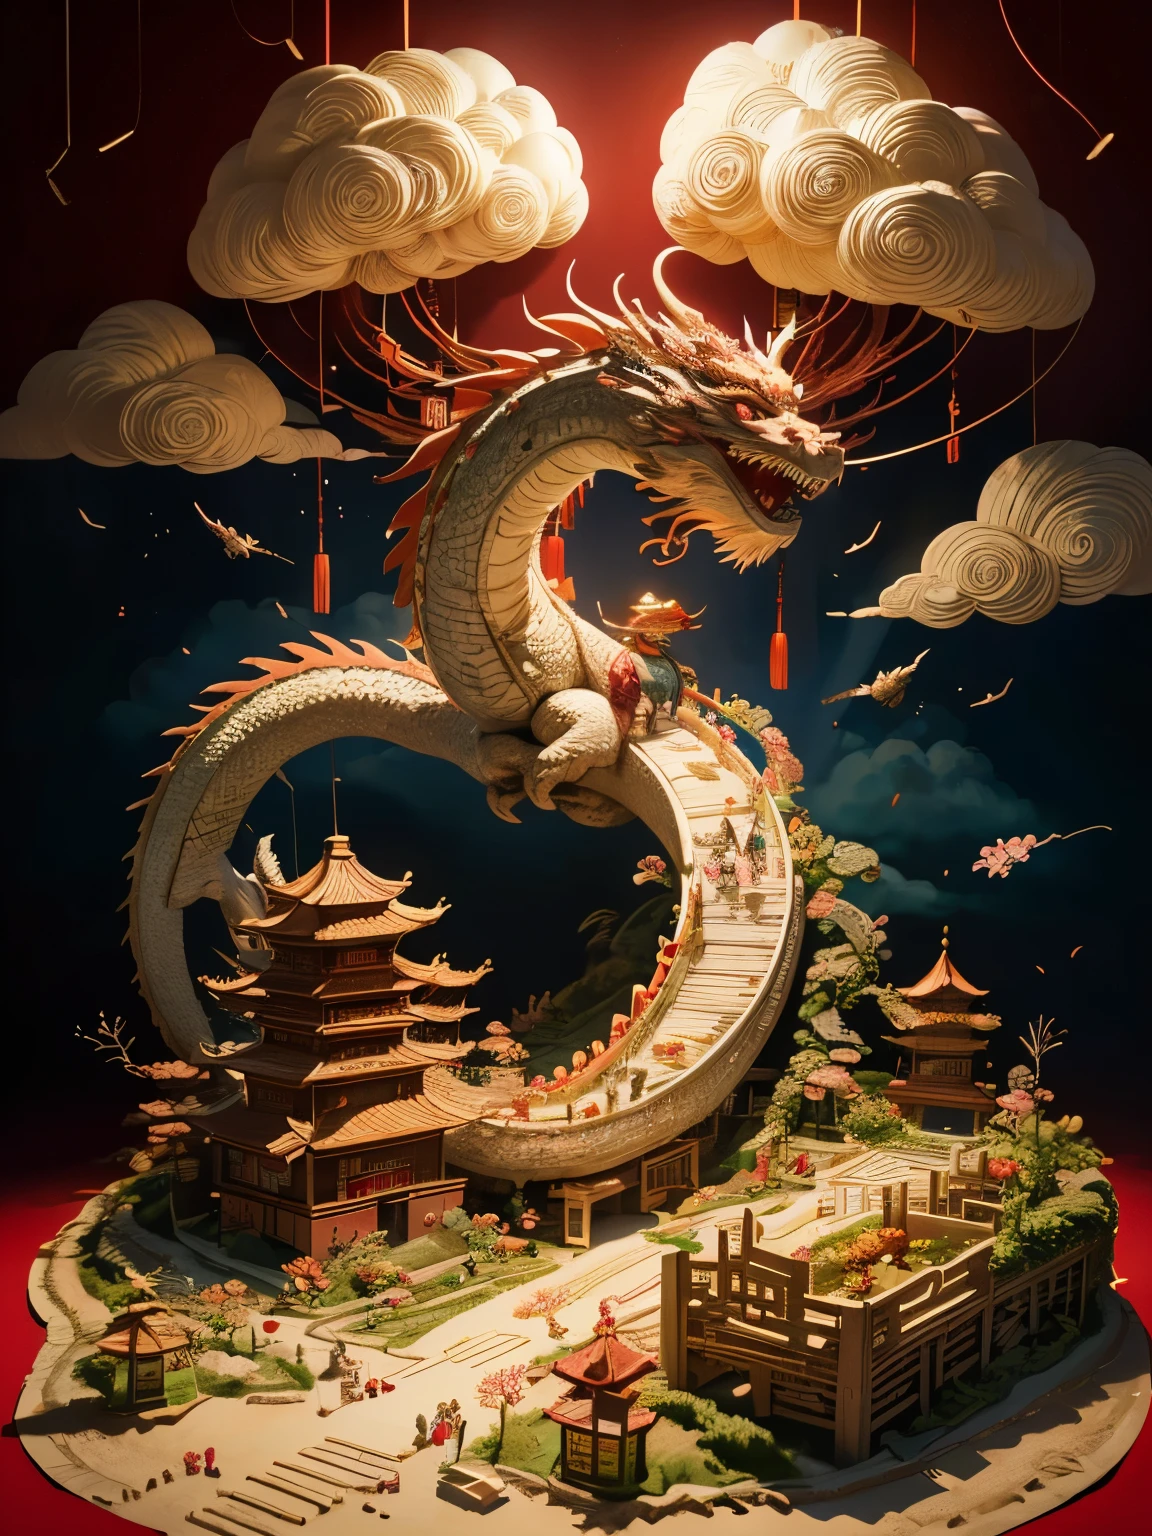 (caixa de areia:1.4), ângulo cinematográfico, (1 linda lanterna chinesa em forma de dragão, Festival da Primavera Chinês, festivo, fundo vermelho, Nuvens, Flores, fogos de artifício, fogos de artifício, lanternas), (arte em papel, Quilted arte em papel, geomerdade), (Extremamente colorido, melhor qualidade, altamente detalhado, obra de arte, iluminação cinematográfica, 4K, claro-escuro)